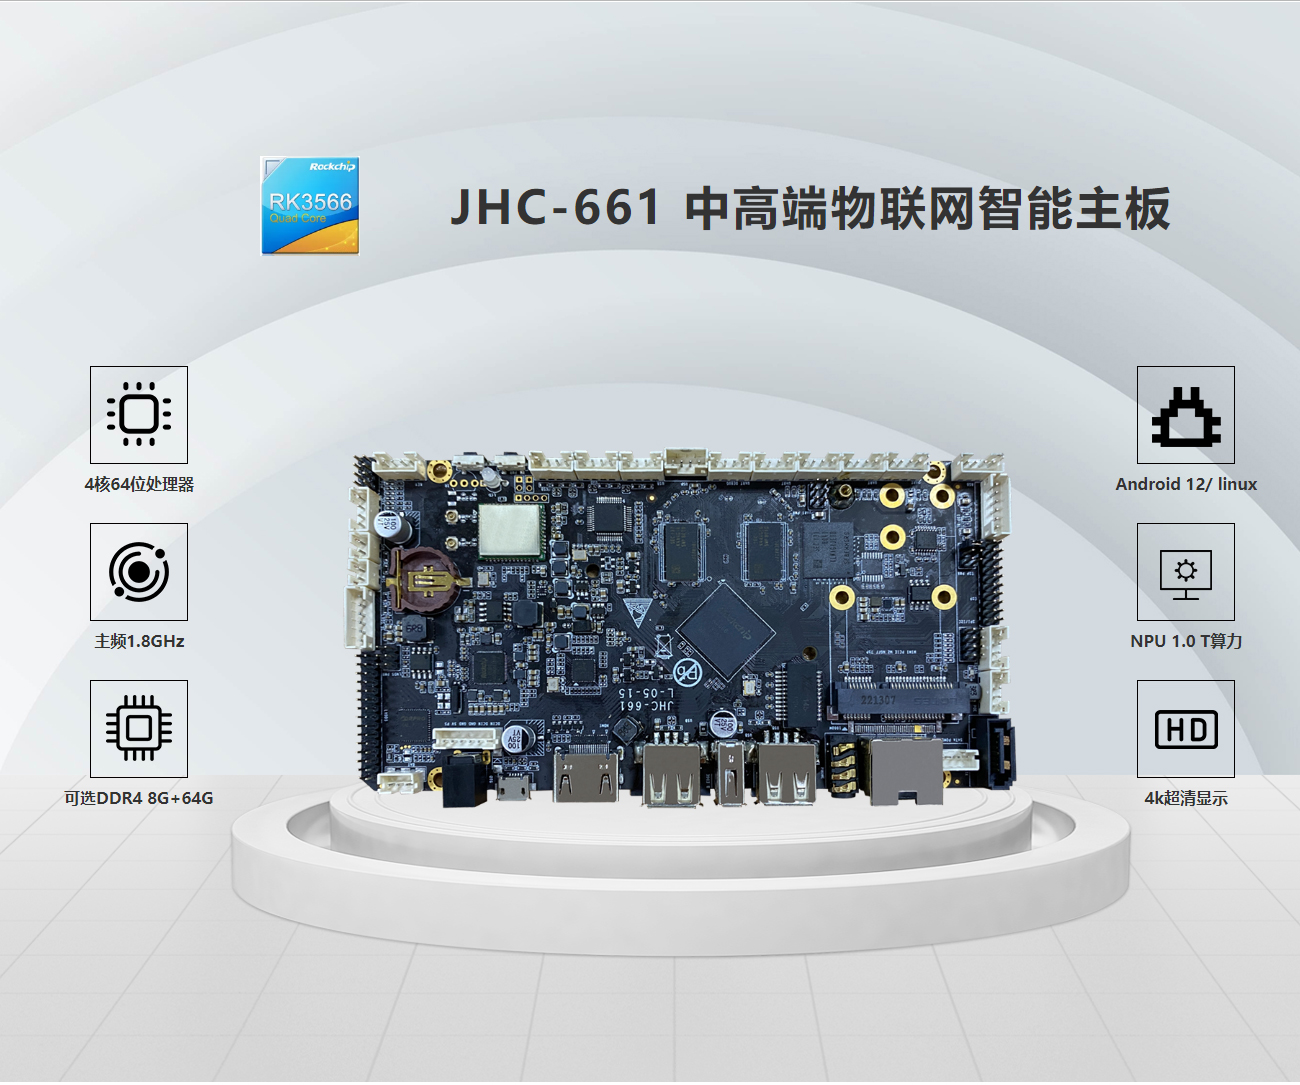 JHC-661 中高端物联网智能主板